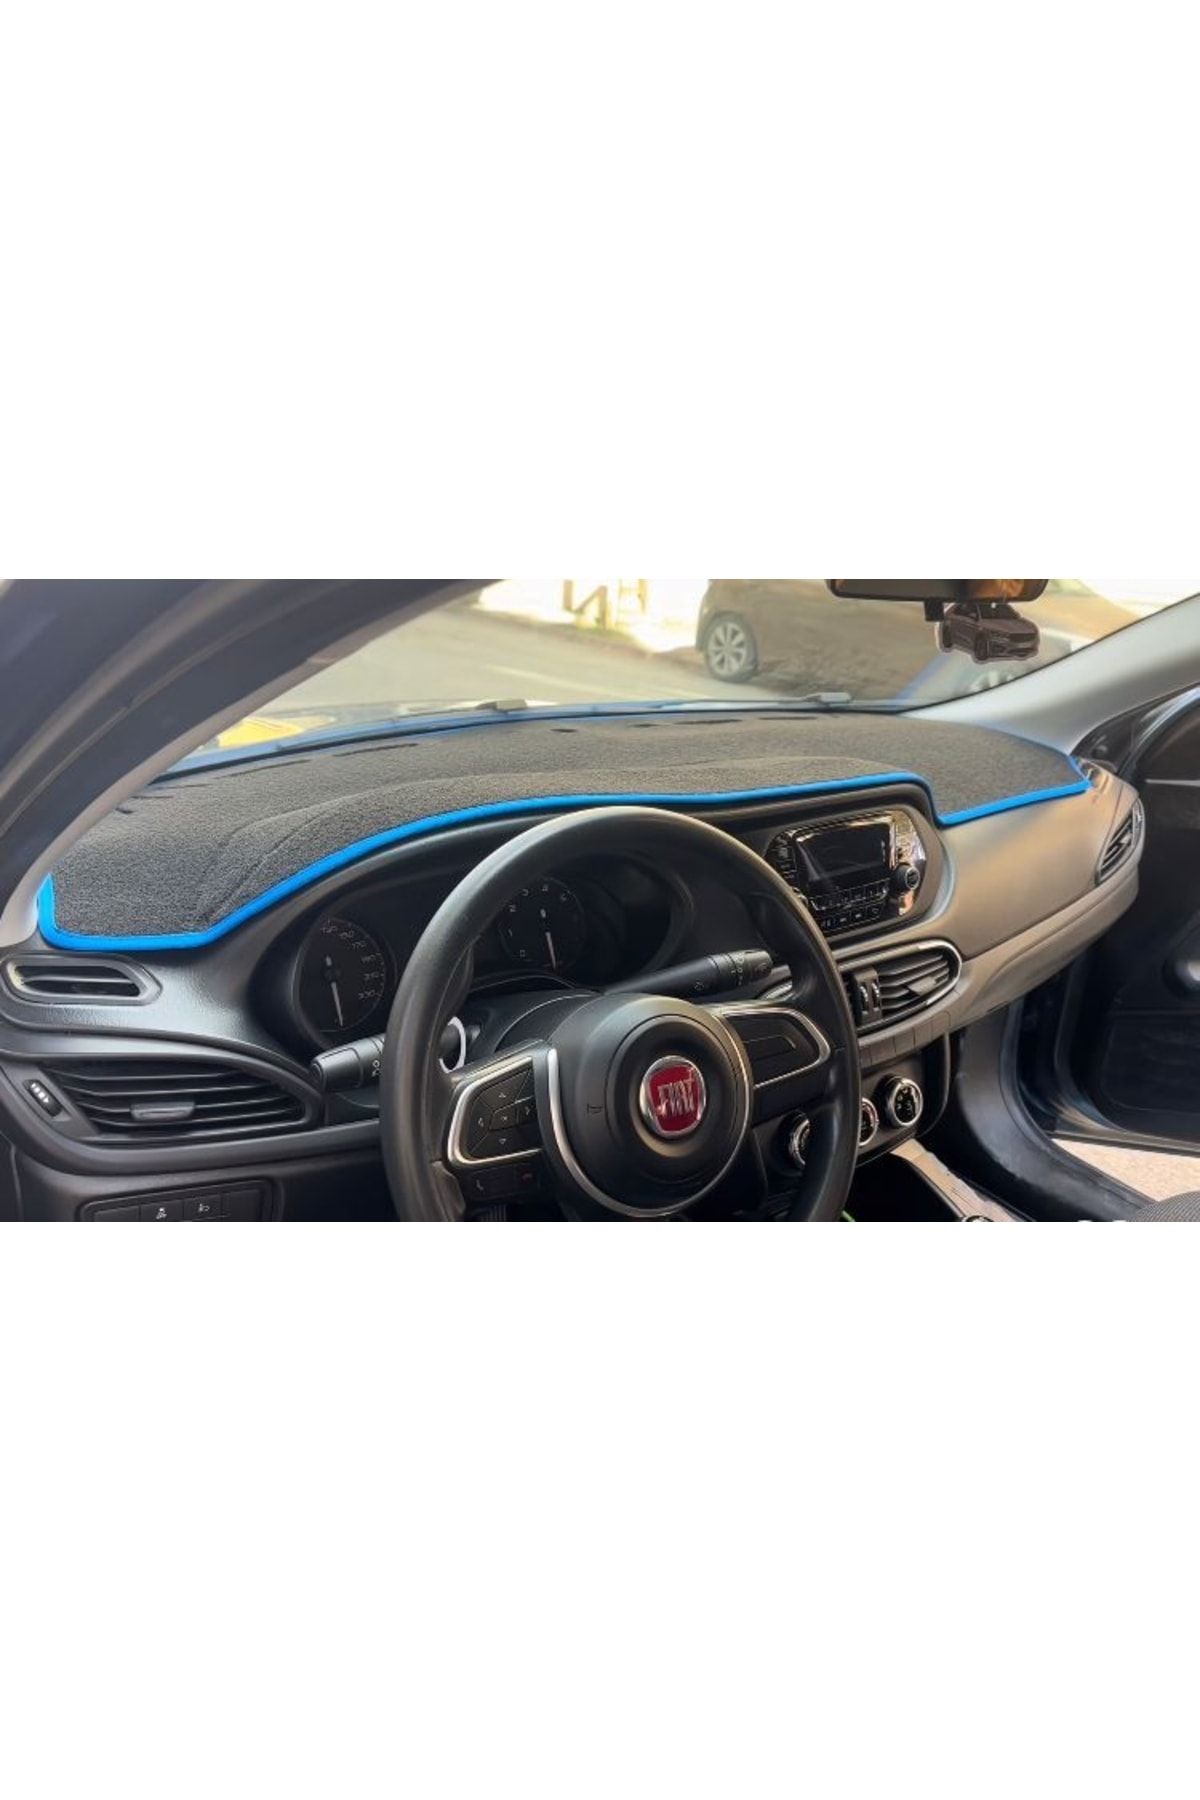 LeeWillson 2015-2020 Modellerine Uygun Fiat Egea Ekransız Torpido Koruma Halısı Siyah Kenar Renk Mavi